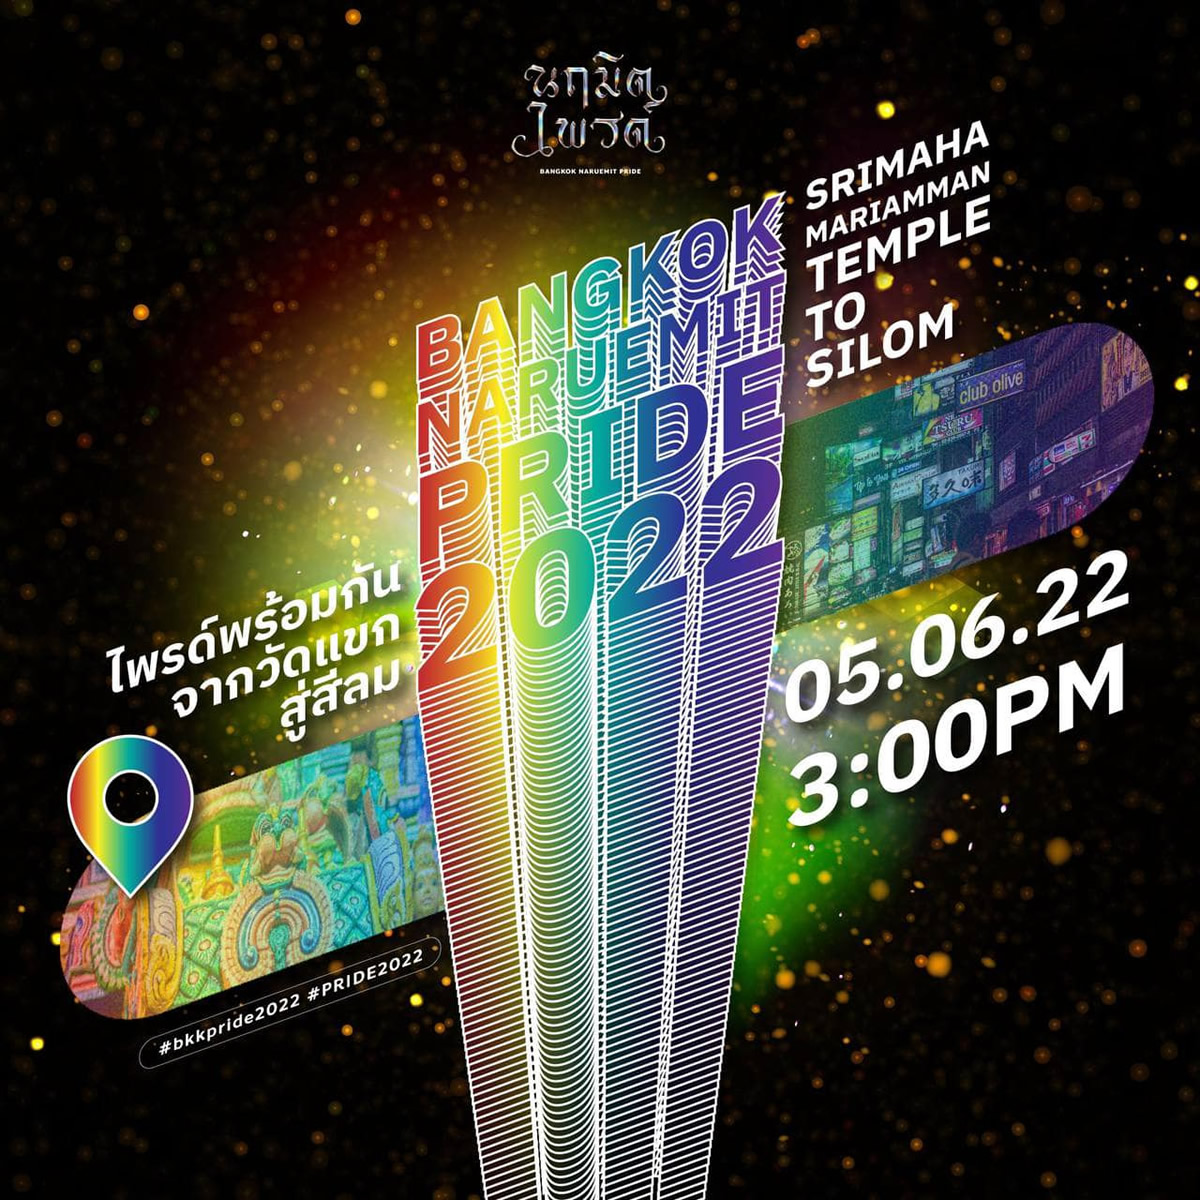 タイ・バンコクで本物のプライド・パレード「Bangkok Naruemit Pride 2022」開催